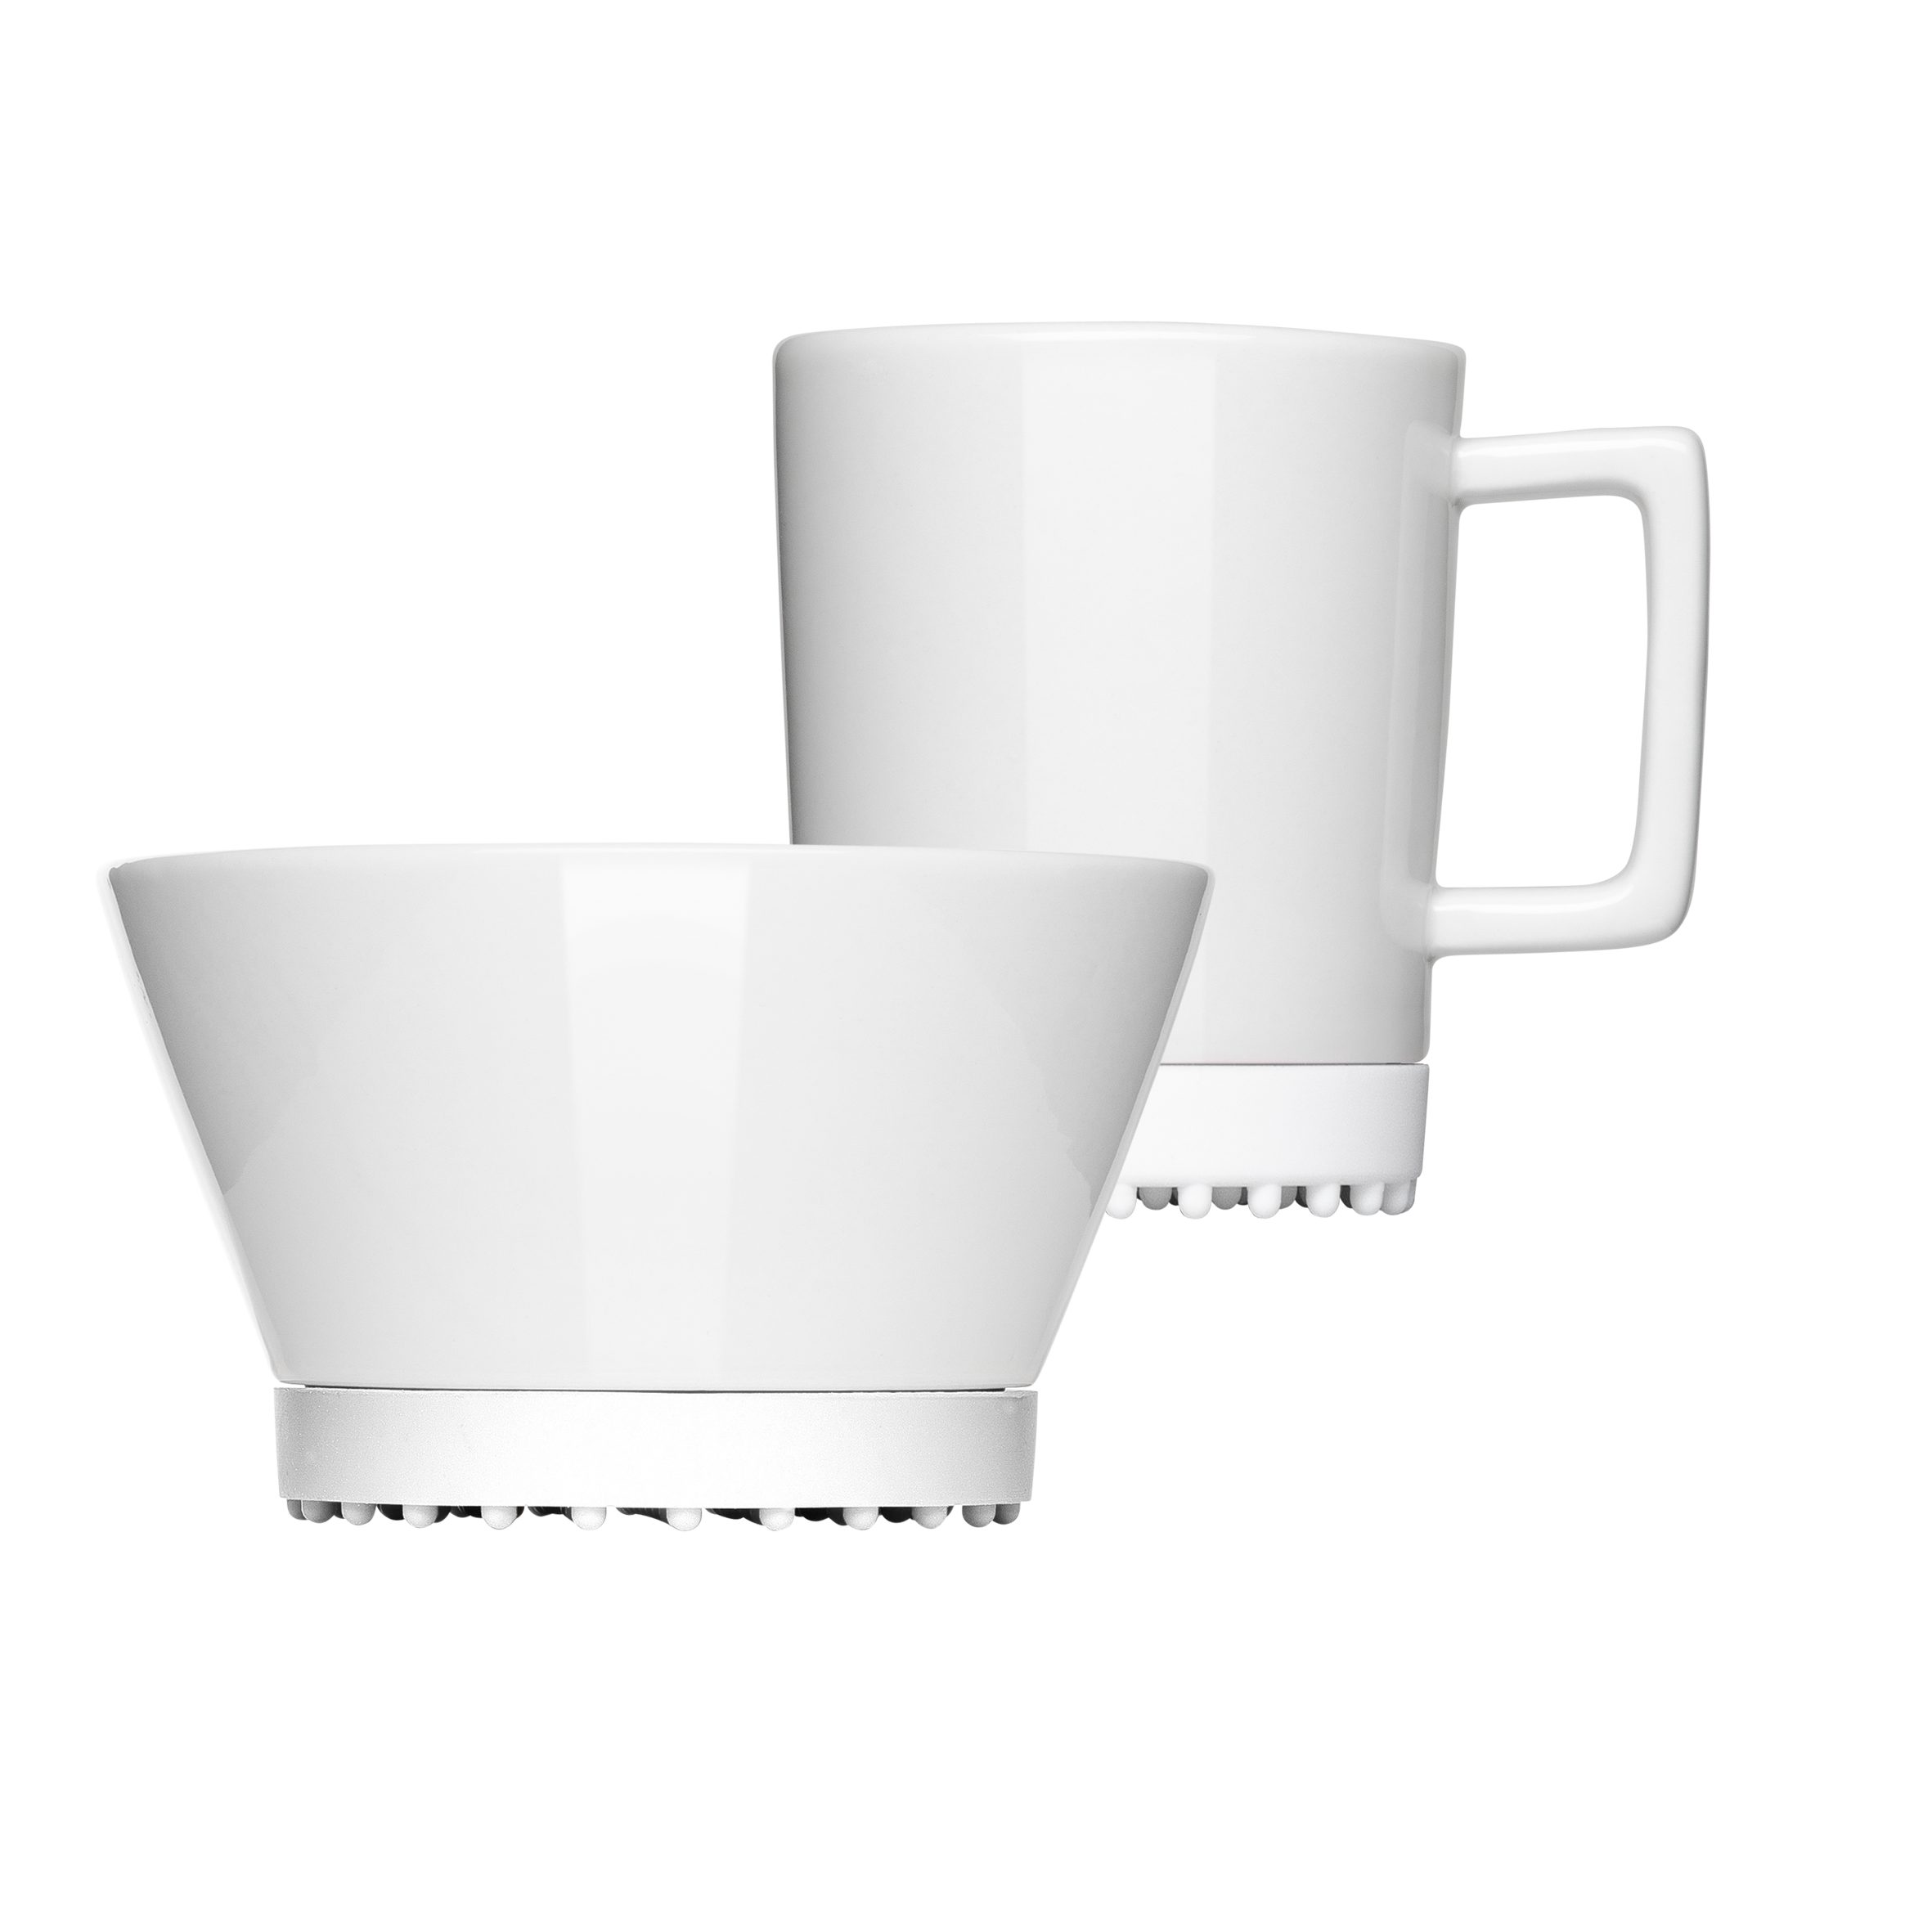 Mahlwerck Manufaktur Frühstücks-Geschirrset SoftPad (2-tlg), 2-teilig, Pearl White spülmaschinengeeignet mikrowellengeeignet, 1 Personen, Porzellan